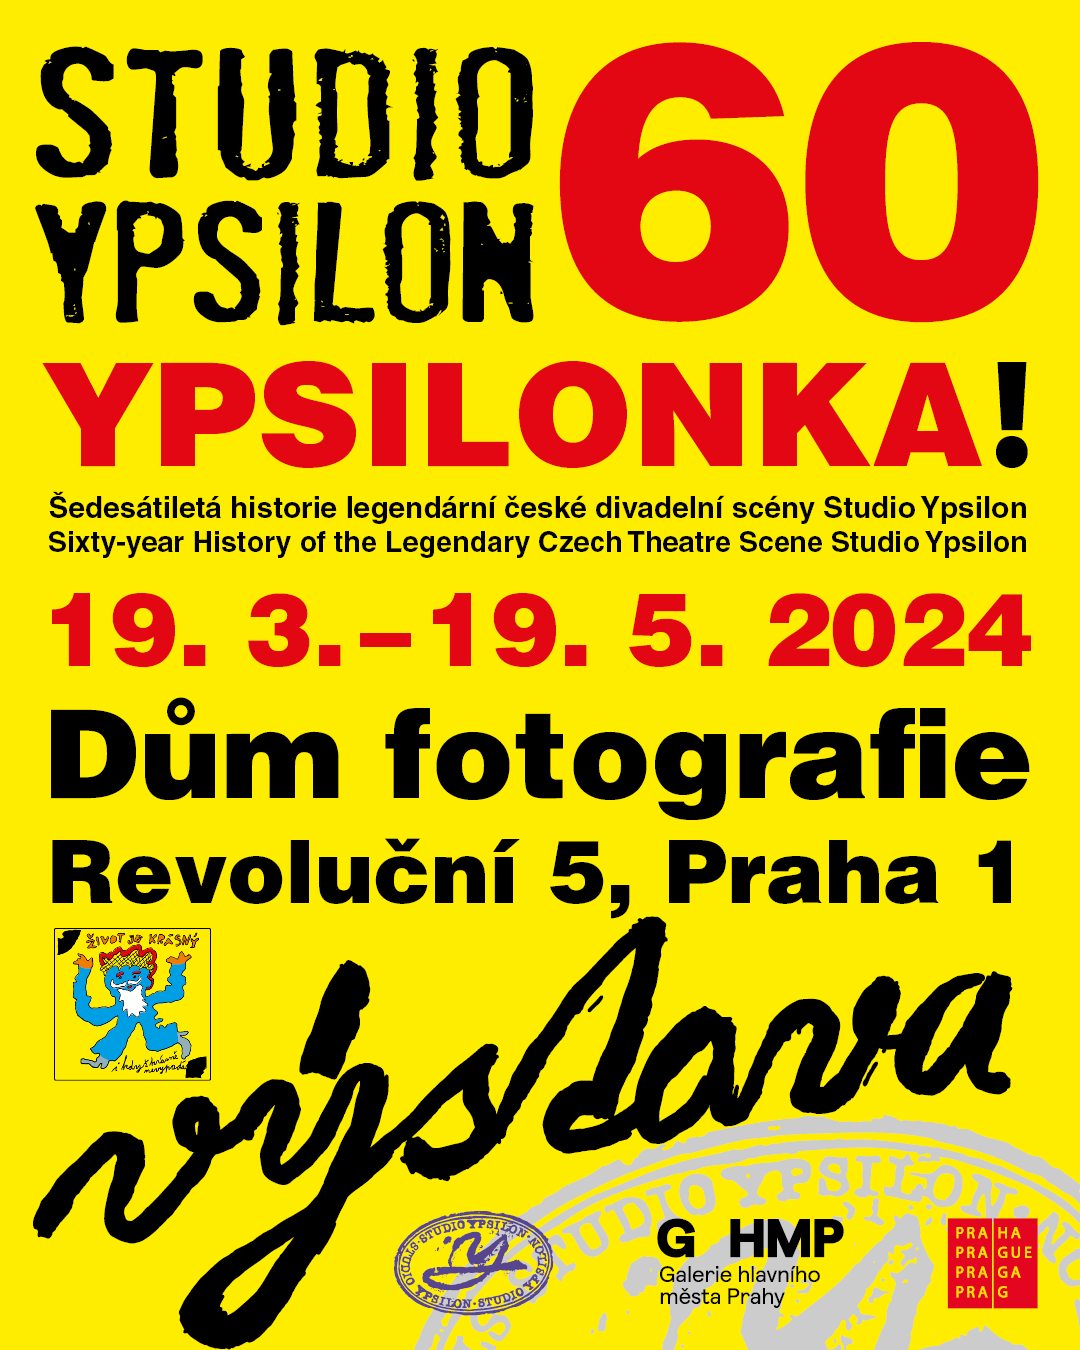 YPSILONKA! Šedesátiletá historie legendární české divadelní scény Studia Ypsilon